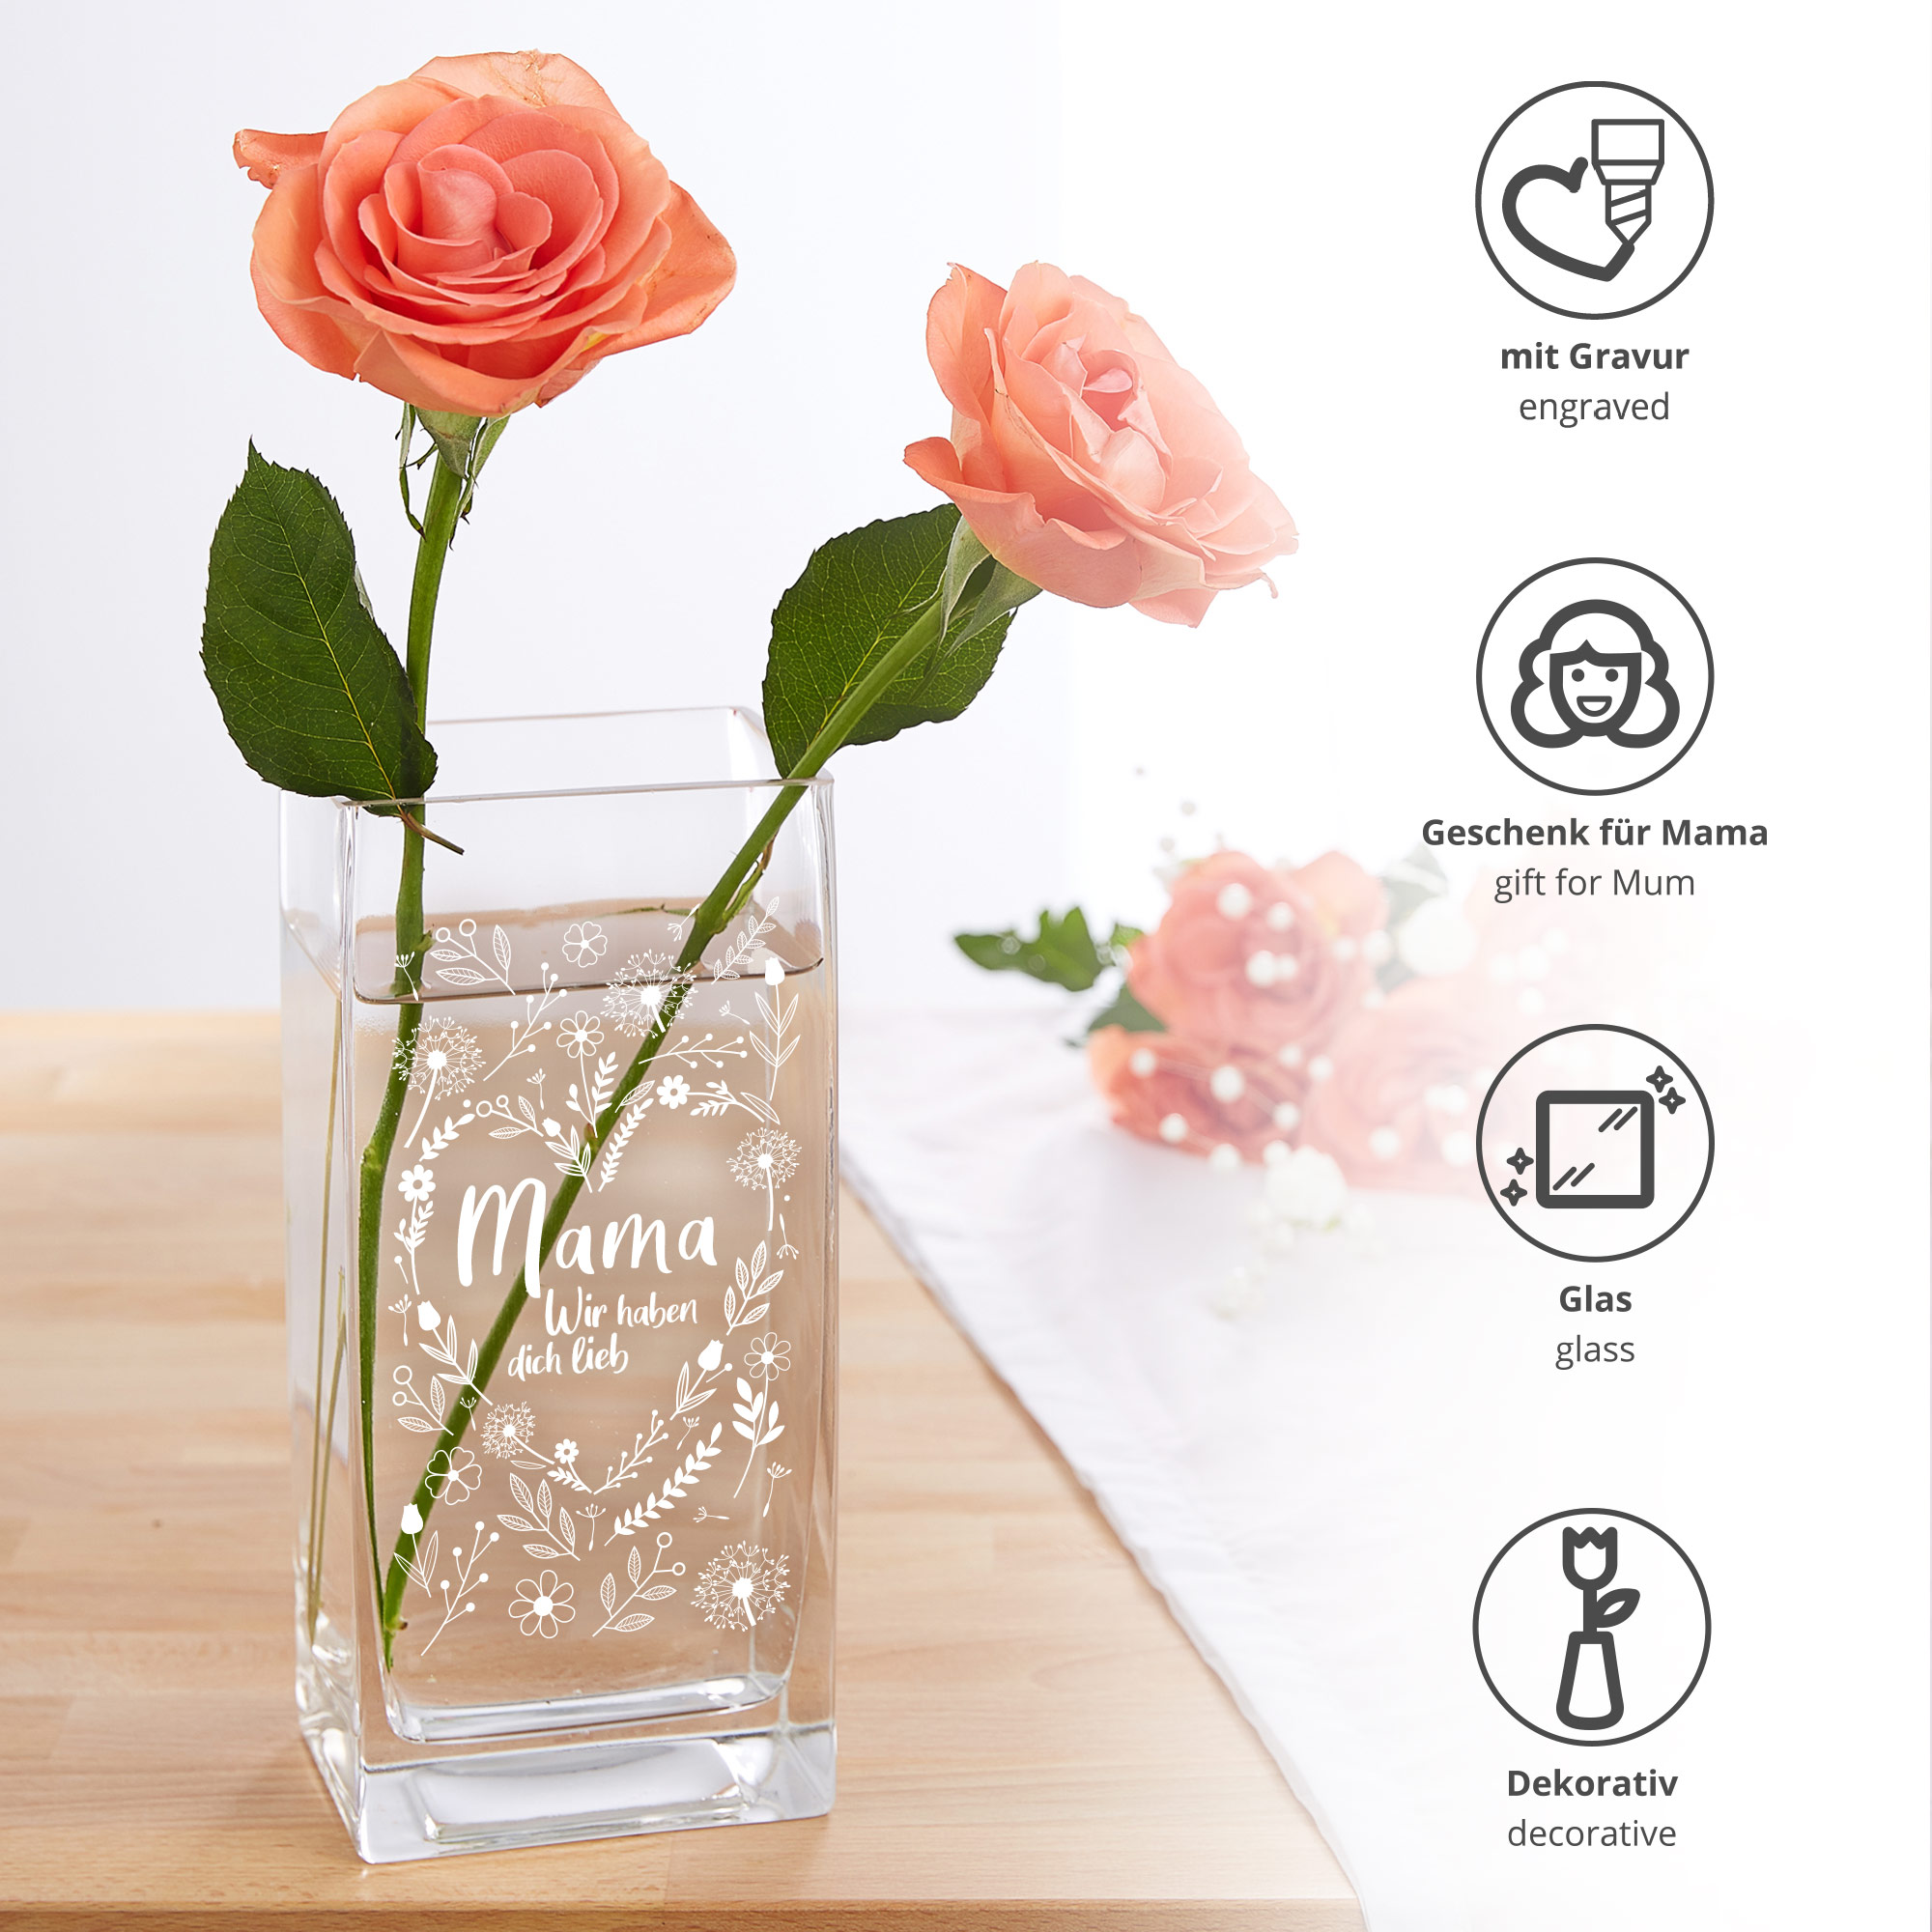 Eckige Vase - Blumenherz für Mama 0006-0019-111-AZ - 3